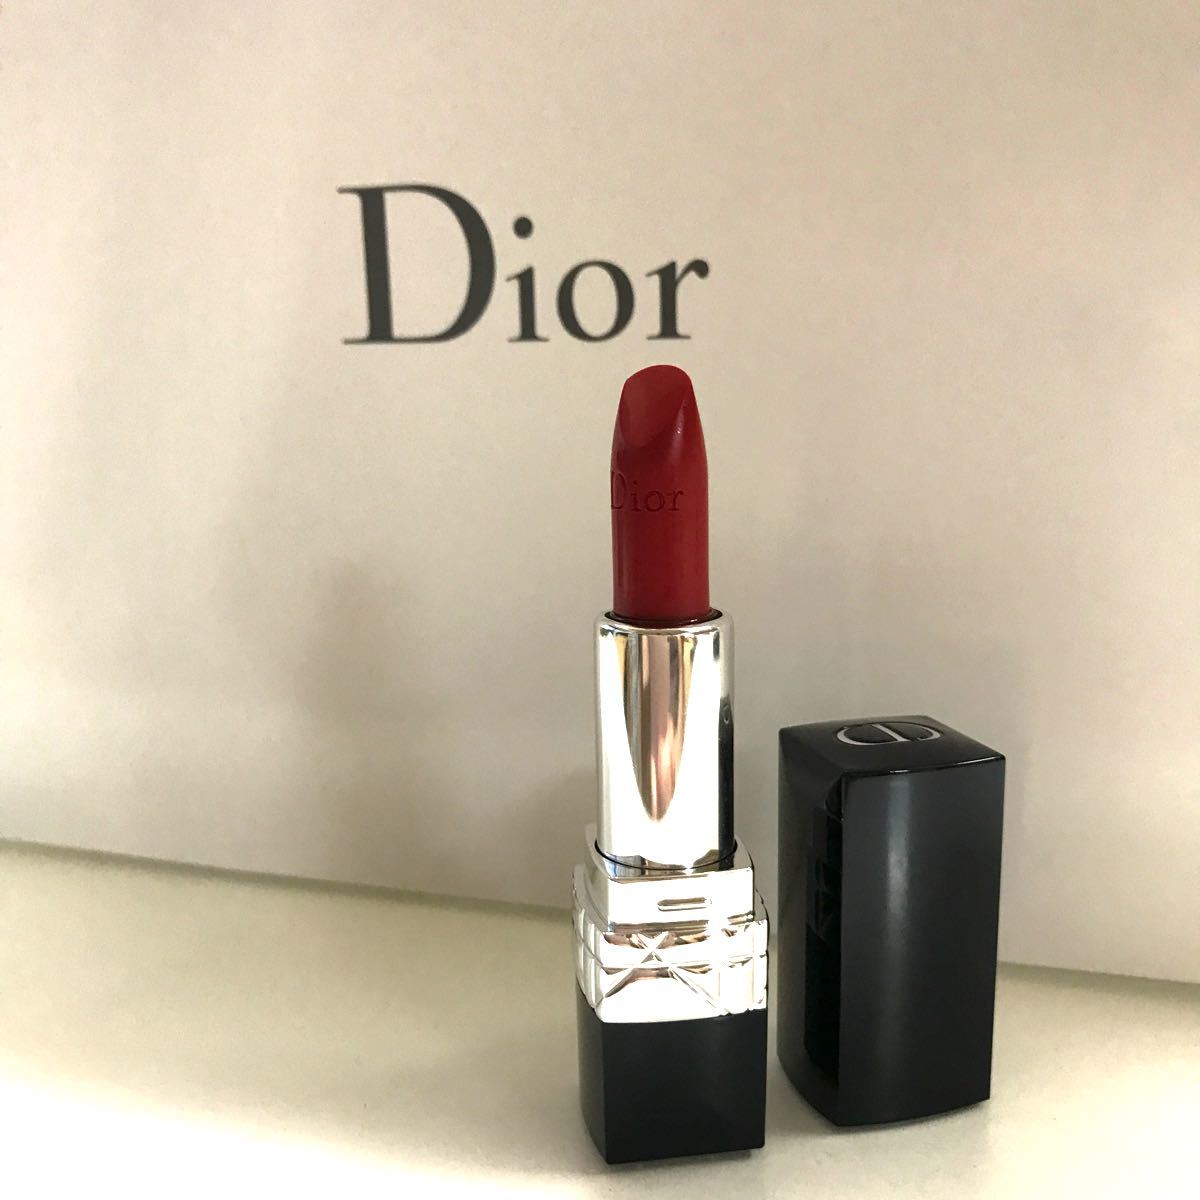 ディオール Dior ルージュディオール 999 リップ 口紅 サンプル 試供品